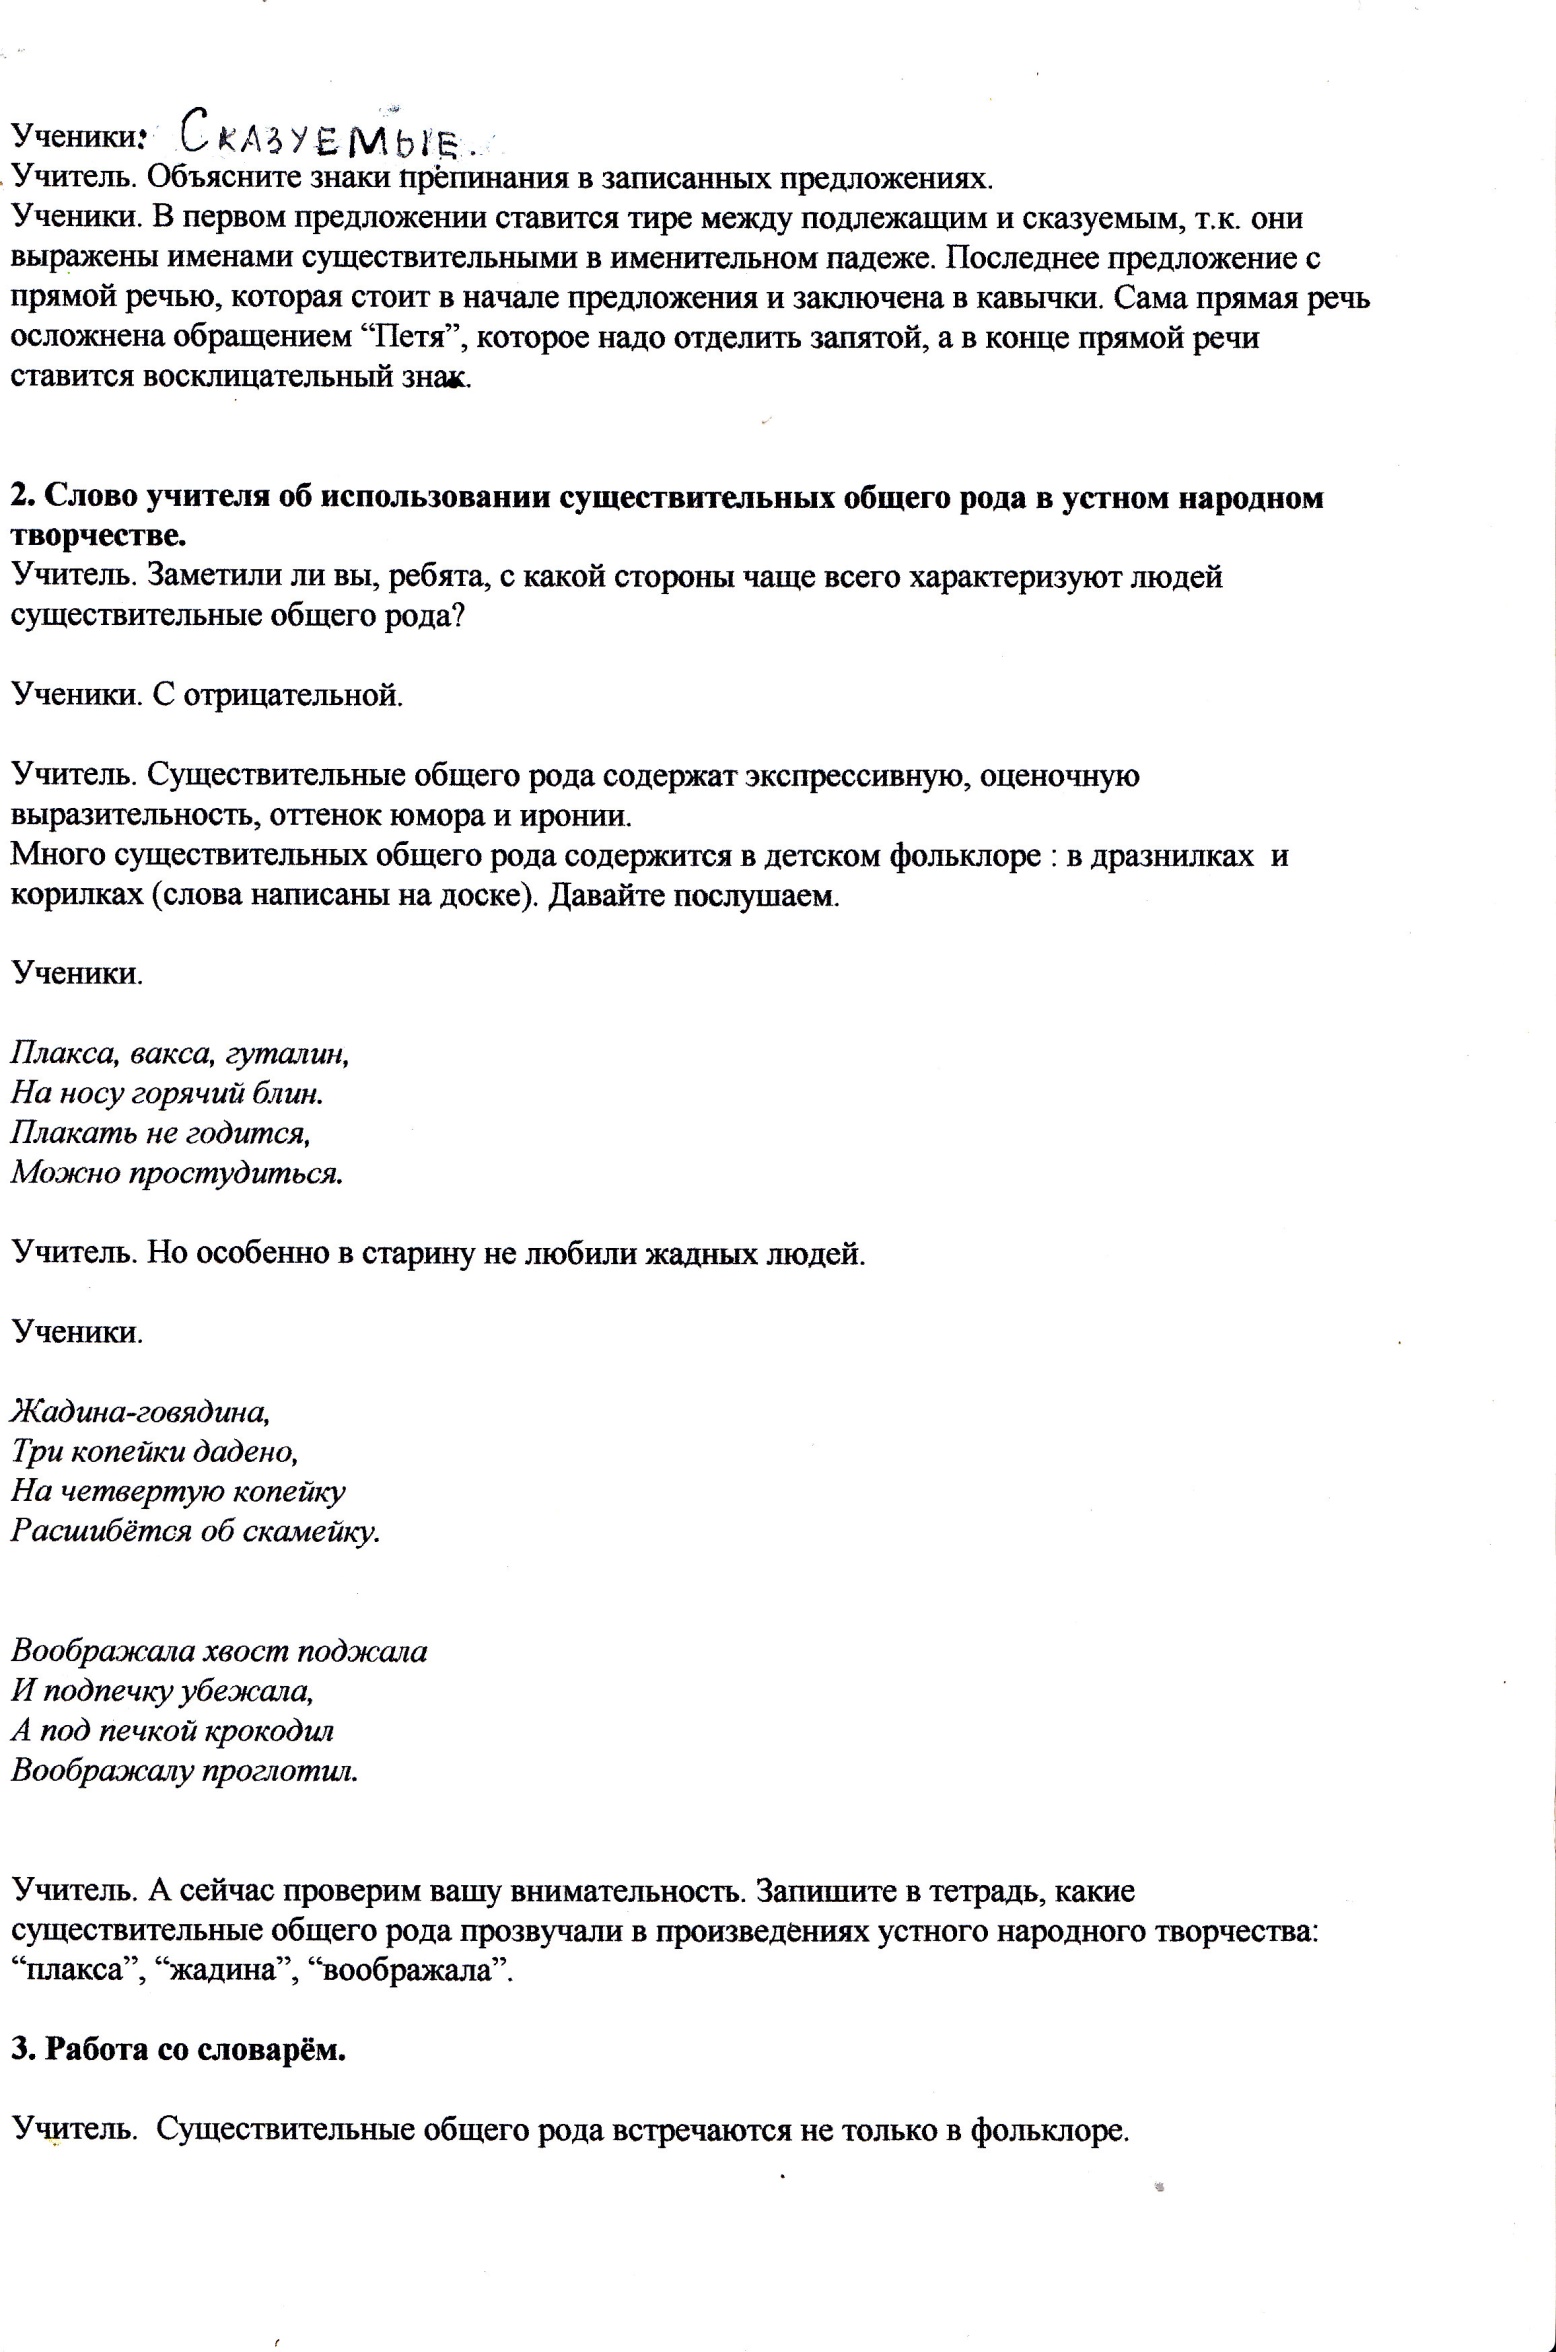 Конспект урока русского языка по теме Имена существительные общего рода (урок-сюрприз) (6 класс)